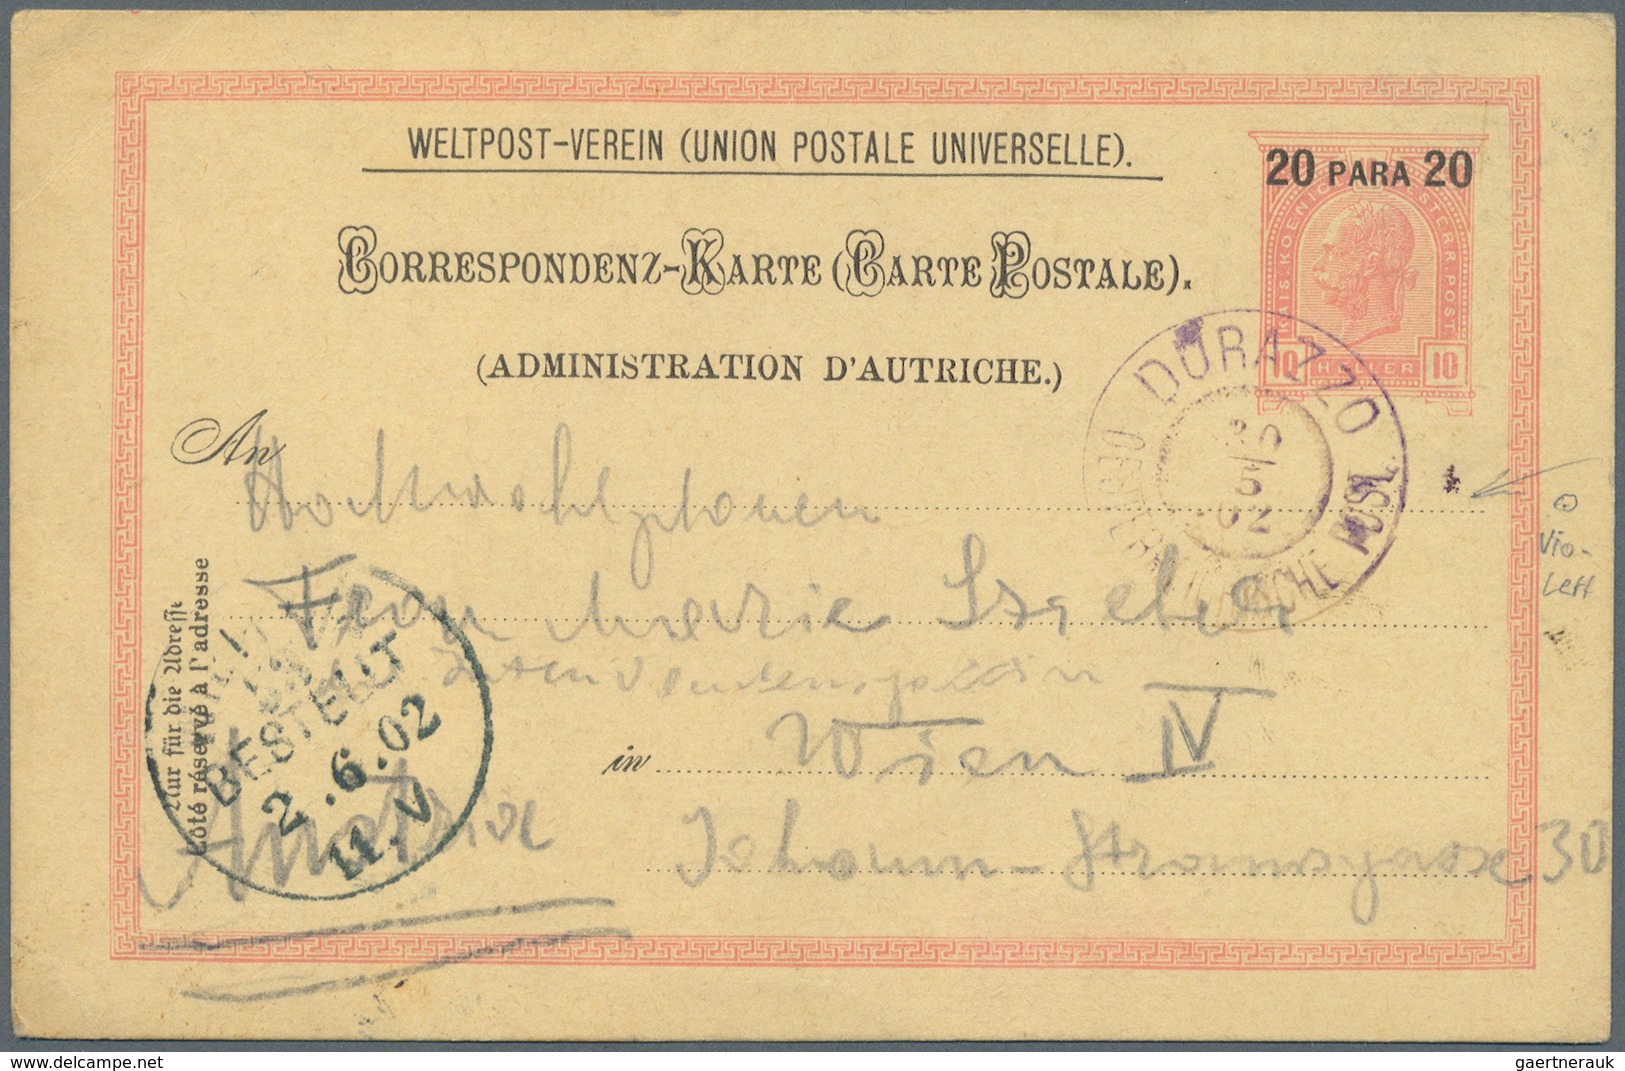 Br/GA Österreichische Post in der Levante: 1866/1918, 22 Belege ohne Constantinpel und Smyrna, dabei u. a.